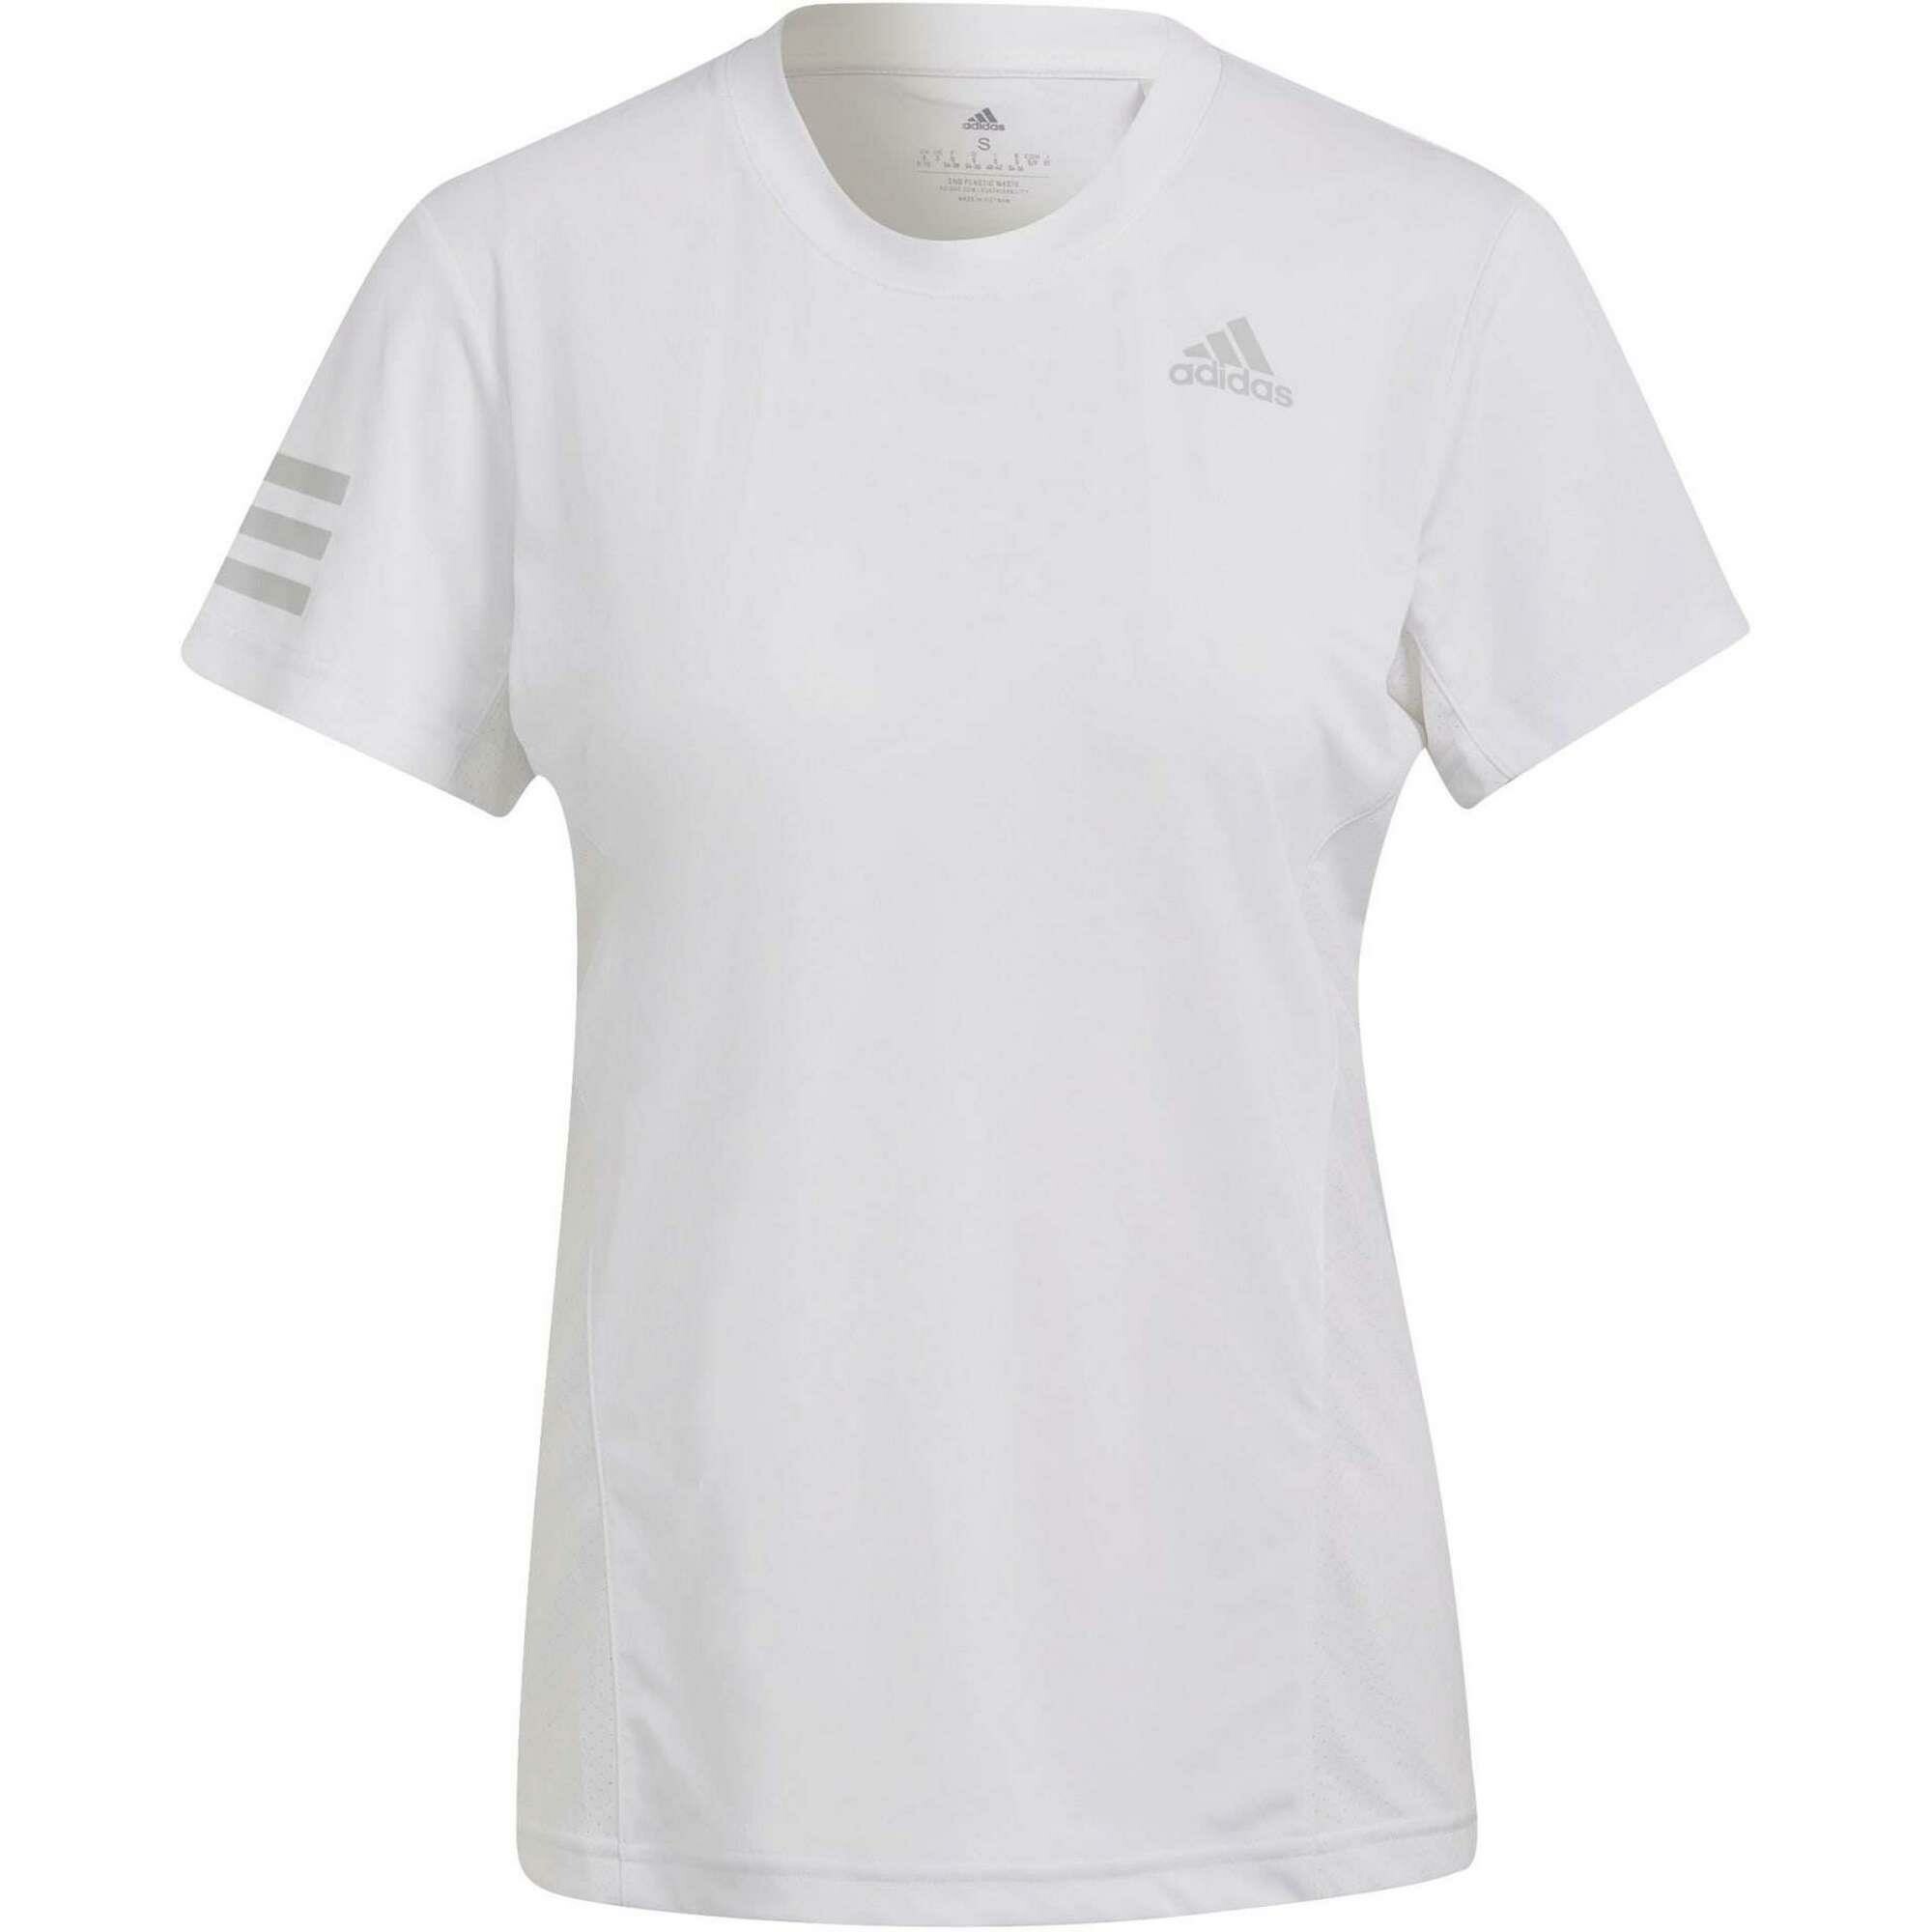 Adidas Club tennisshirt dames white two